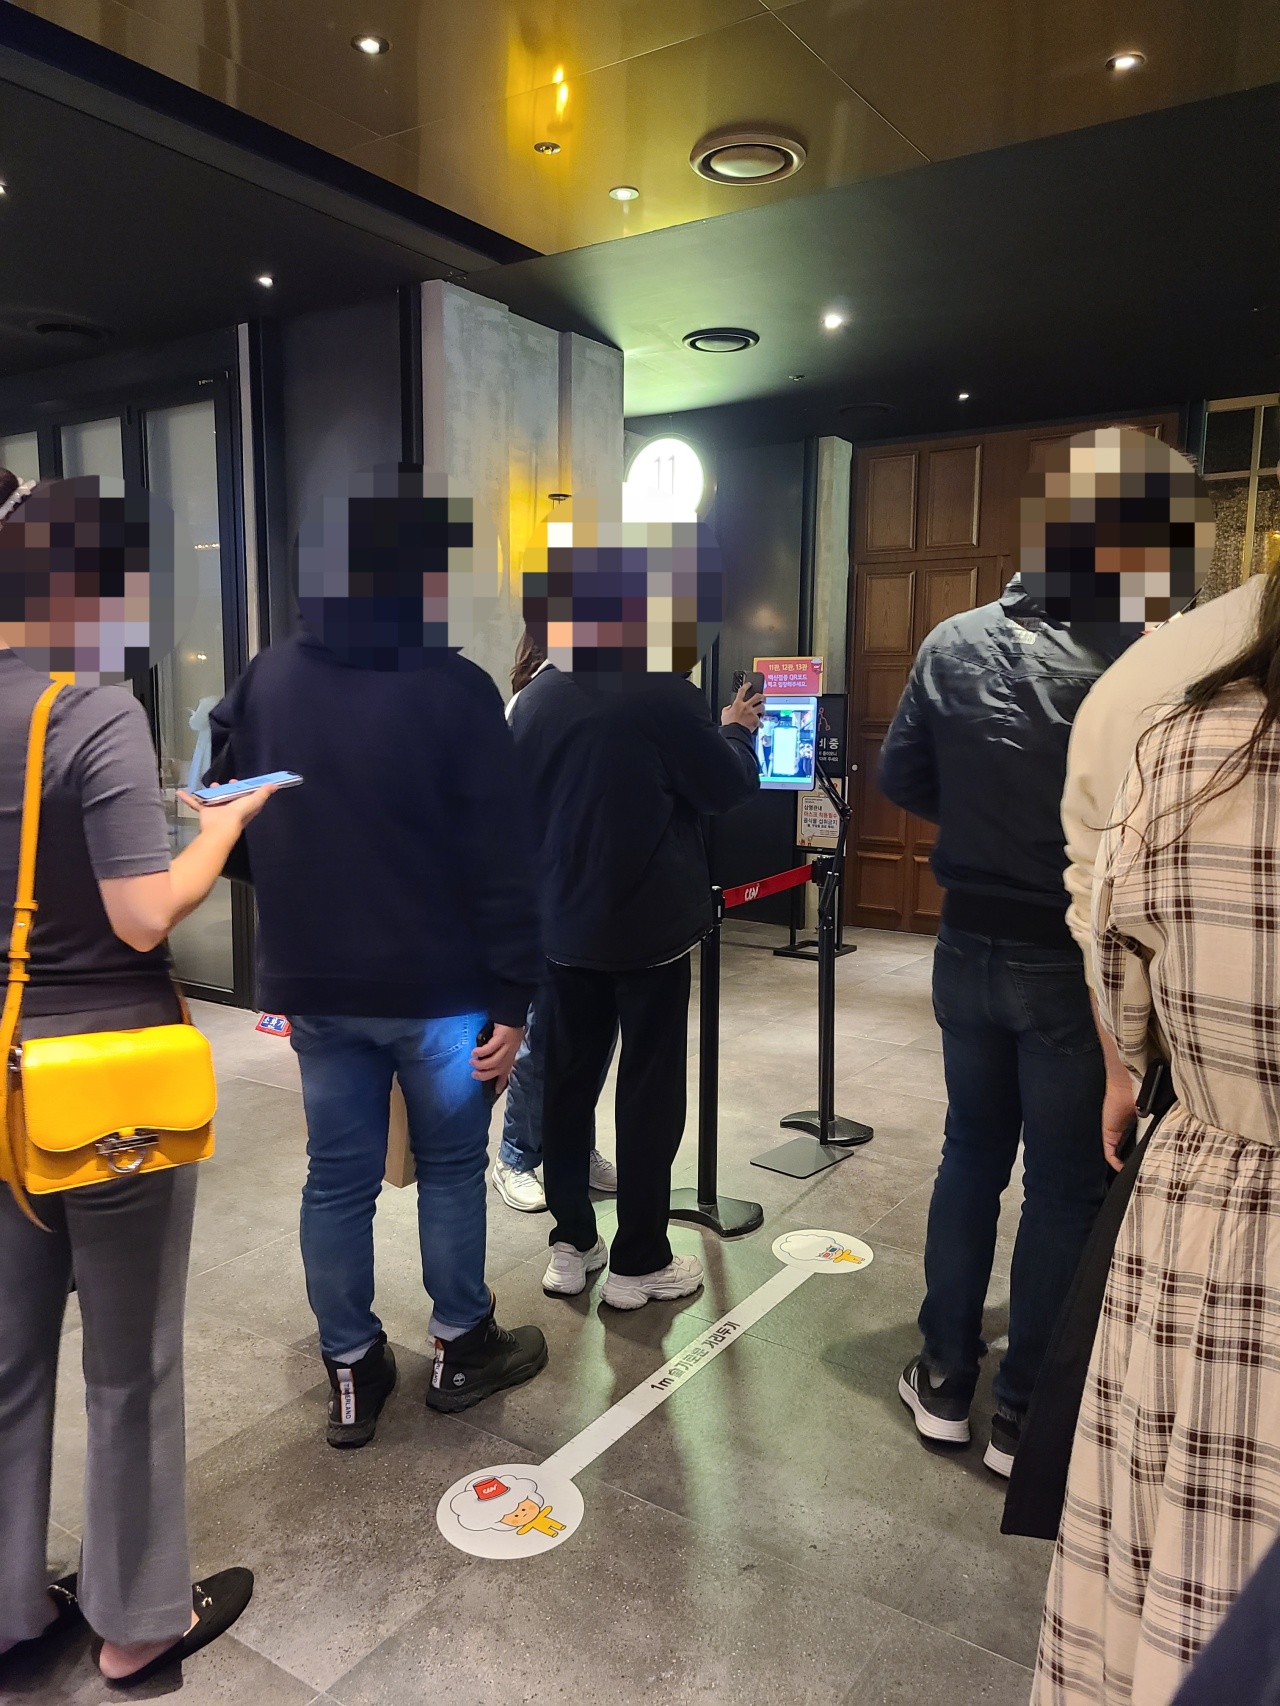 20일 오후 서울 중구 CGV용산 백신통로에 들어서기 전 관객들이 QR코드를 스캔하기 위해 줄을 서고 있다.  (성승현/코리아헤럴드)